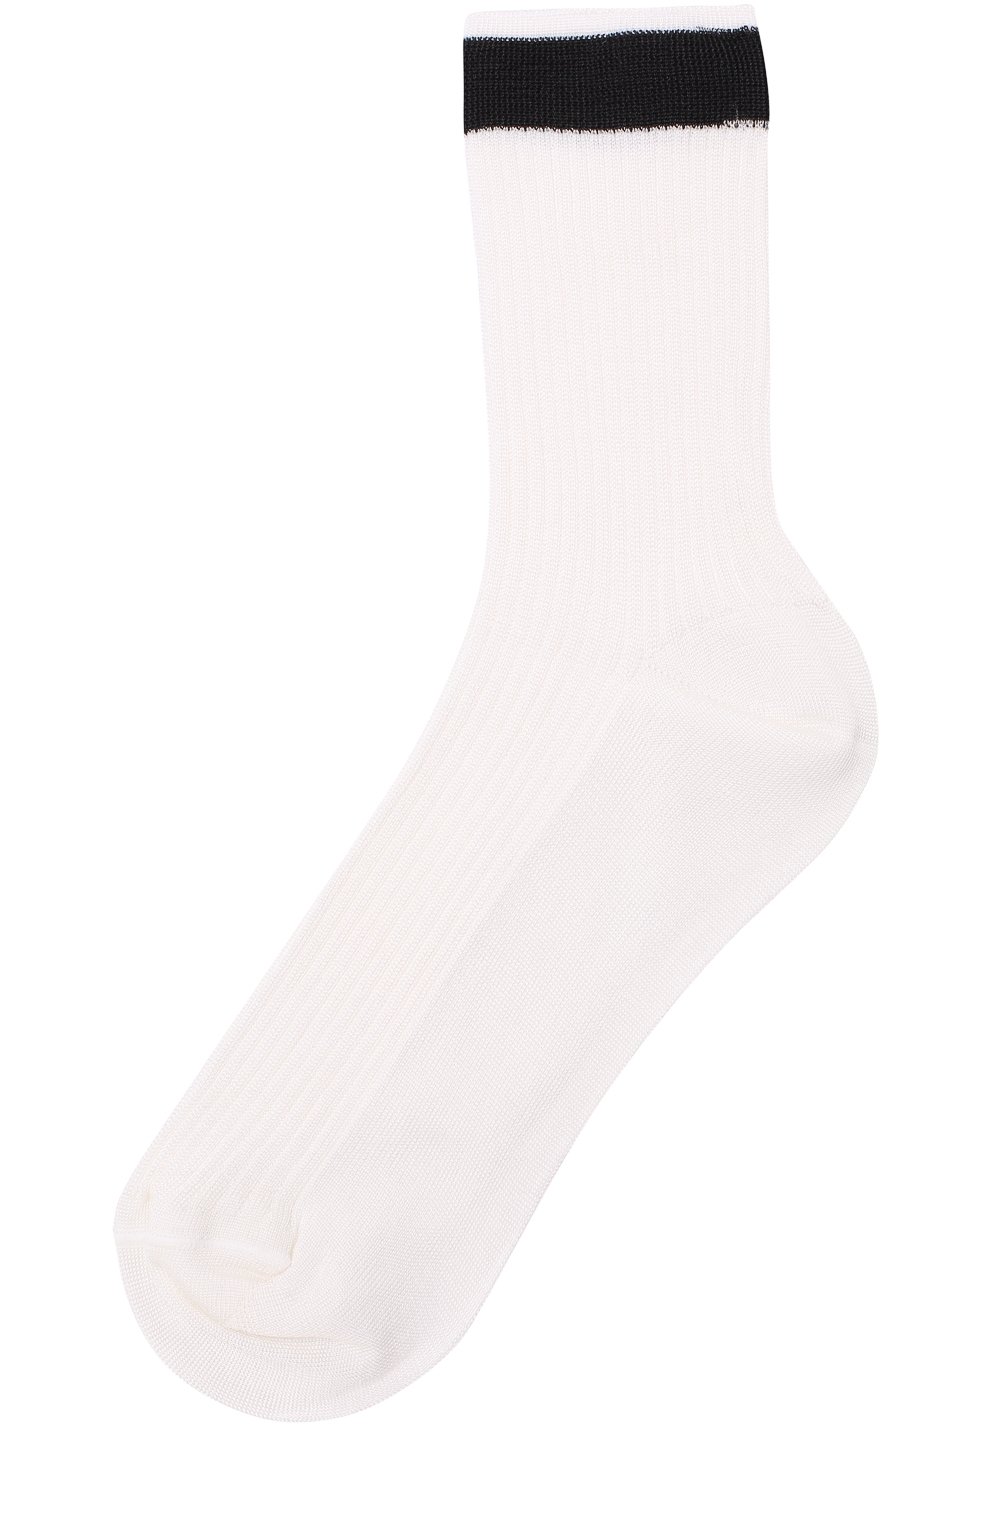 Женские шелковые носки с контрастной отделкой VALENTINO черного цвета, арт. PB3KI01D/3TD | Фото 1 (Материал внешний: Шелк, Синтетический материал)